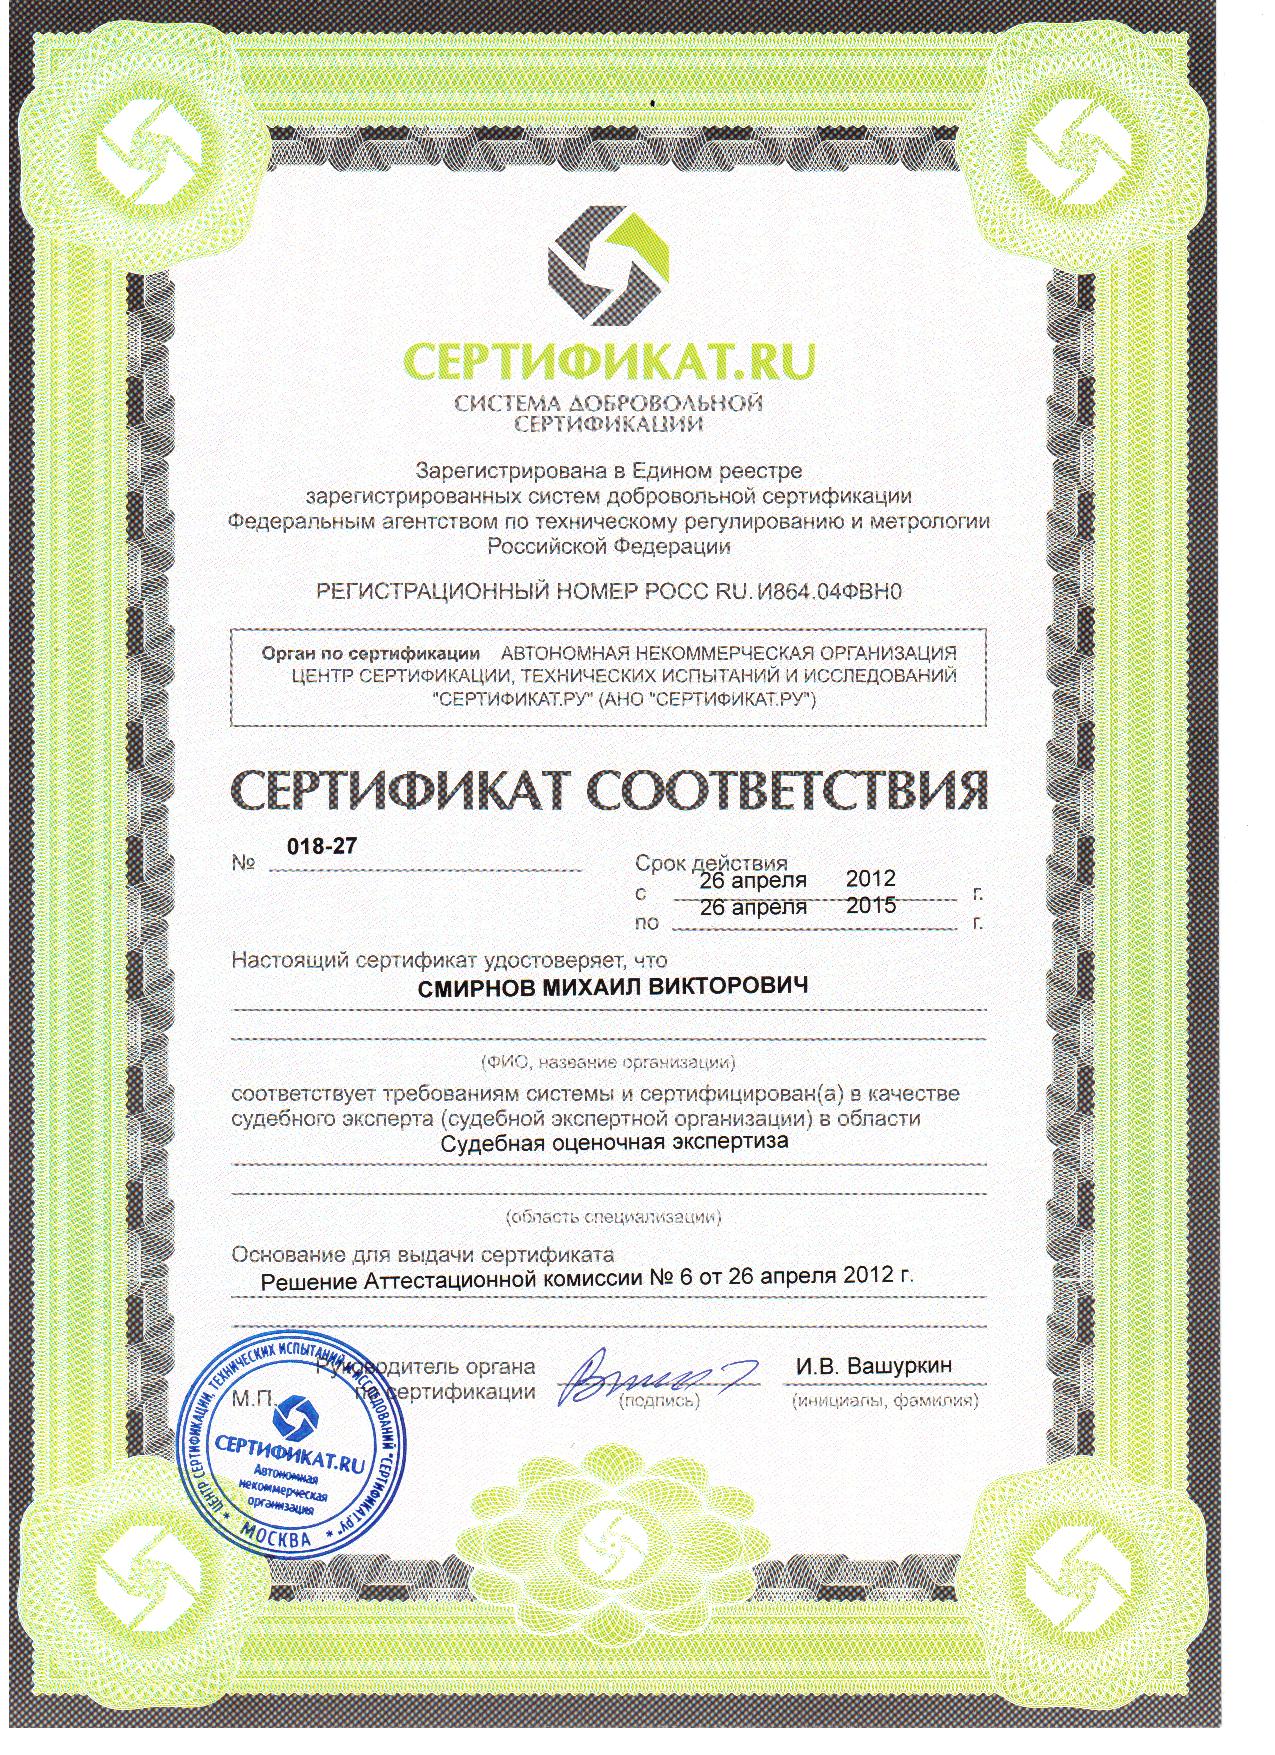 Сертификат соответствия сертификат.ru